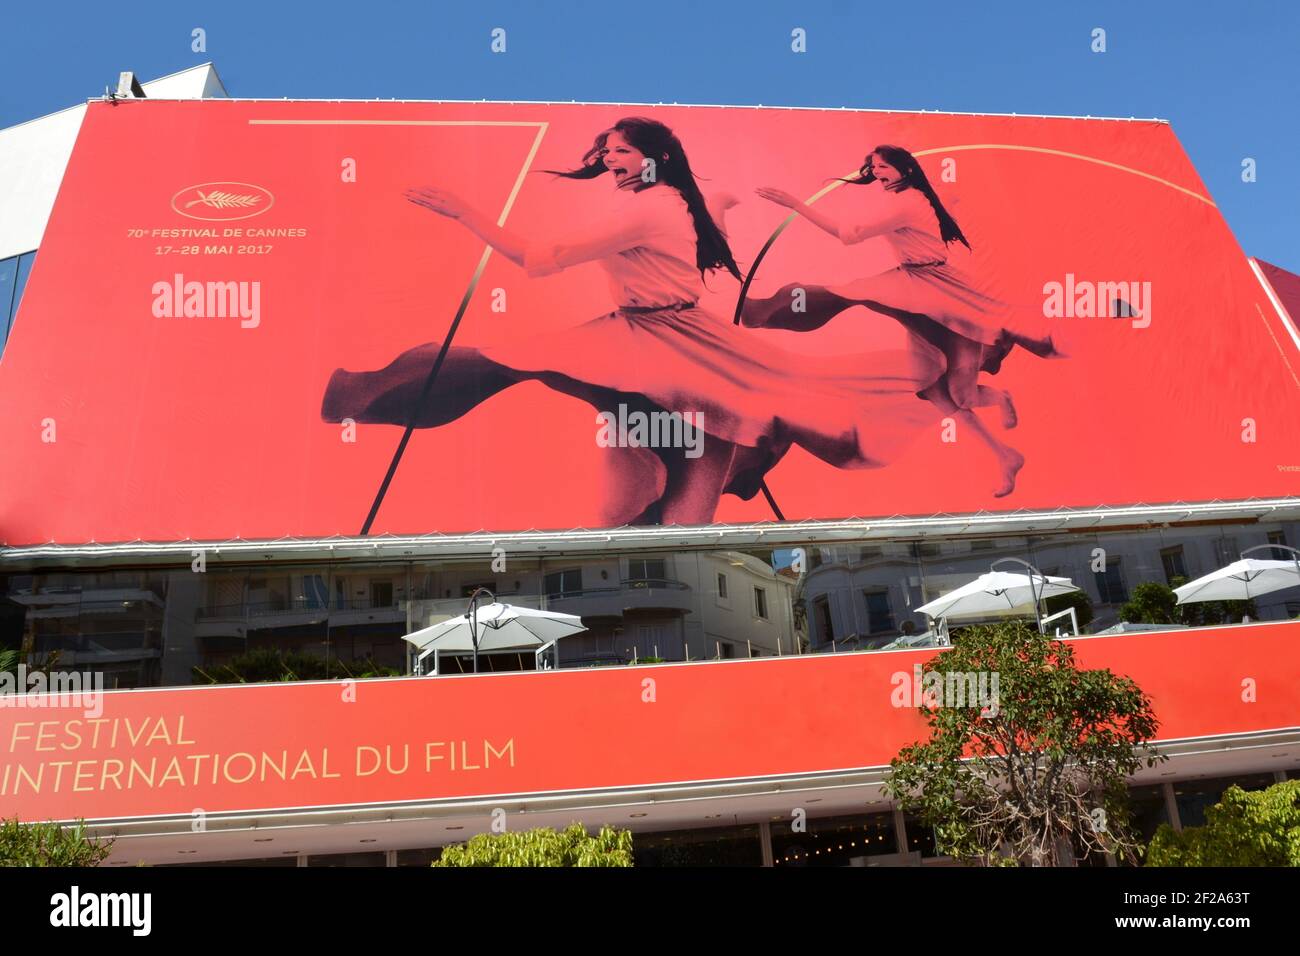 Francia, francia riveira, Cannes, manifesto ufficiale del 70° Festival Internazionale del Cinema, l'artista scelto per questa edizione è Claudia CARDINALE. Foto Stock